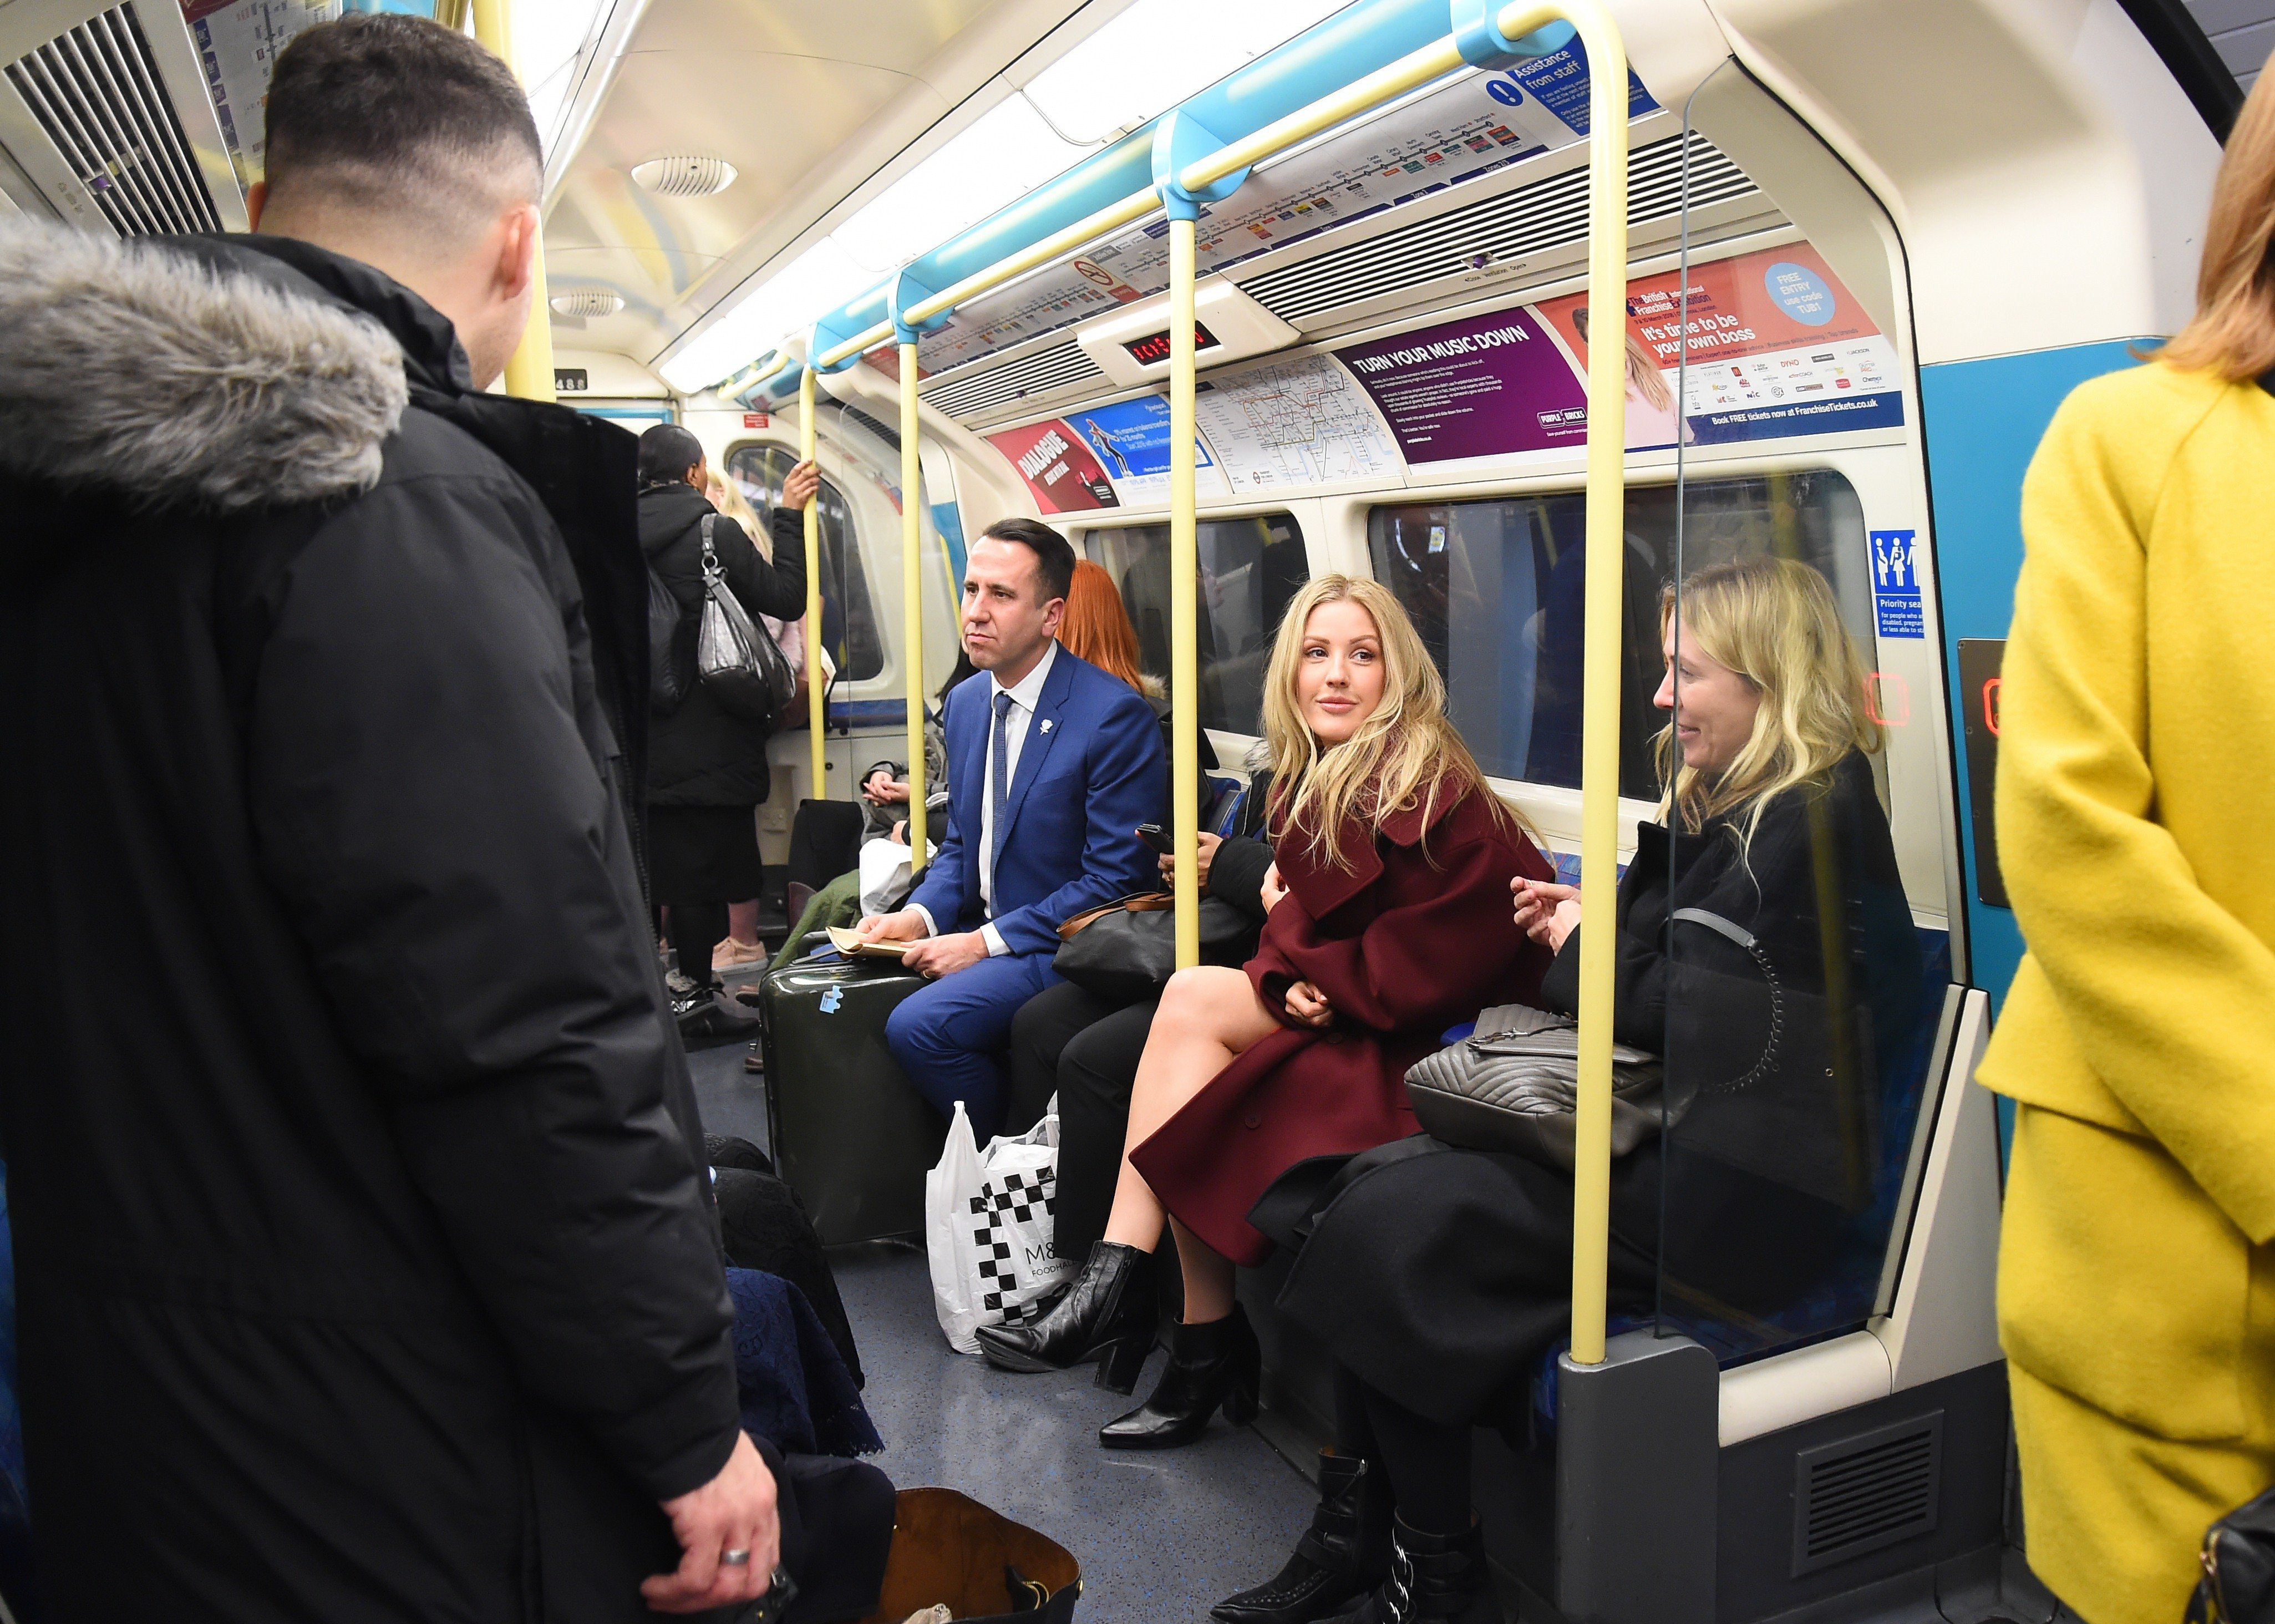 Hiába világsztár, metróval ment a díjátadóra Ellie Goulding – képek - Blikk